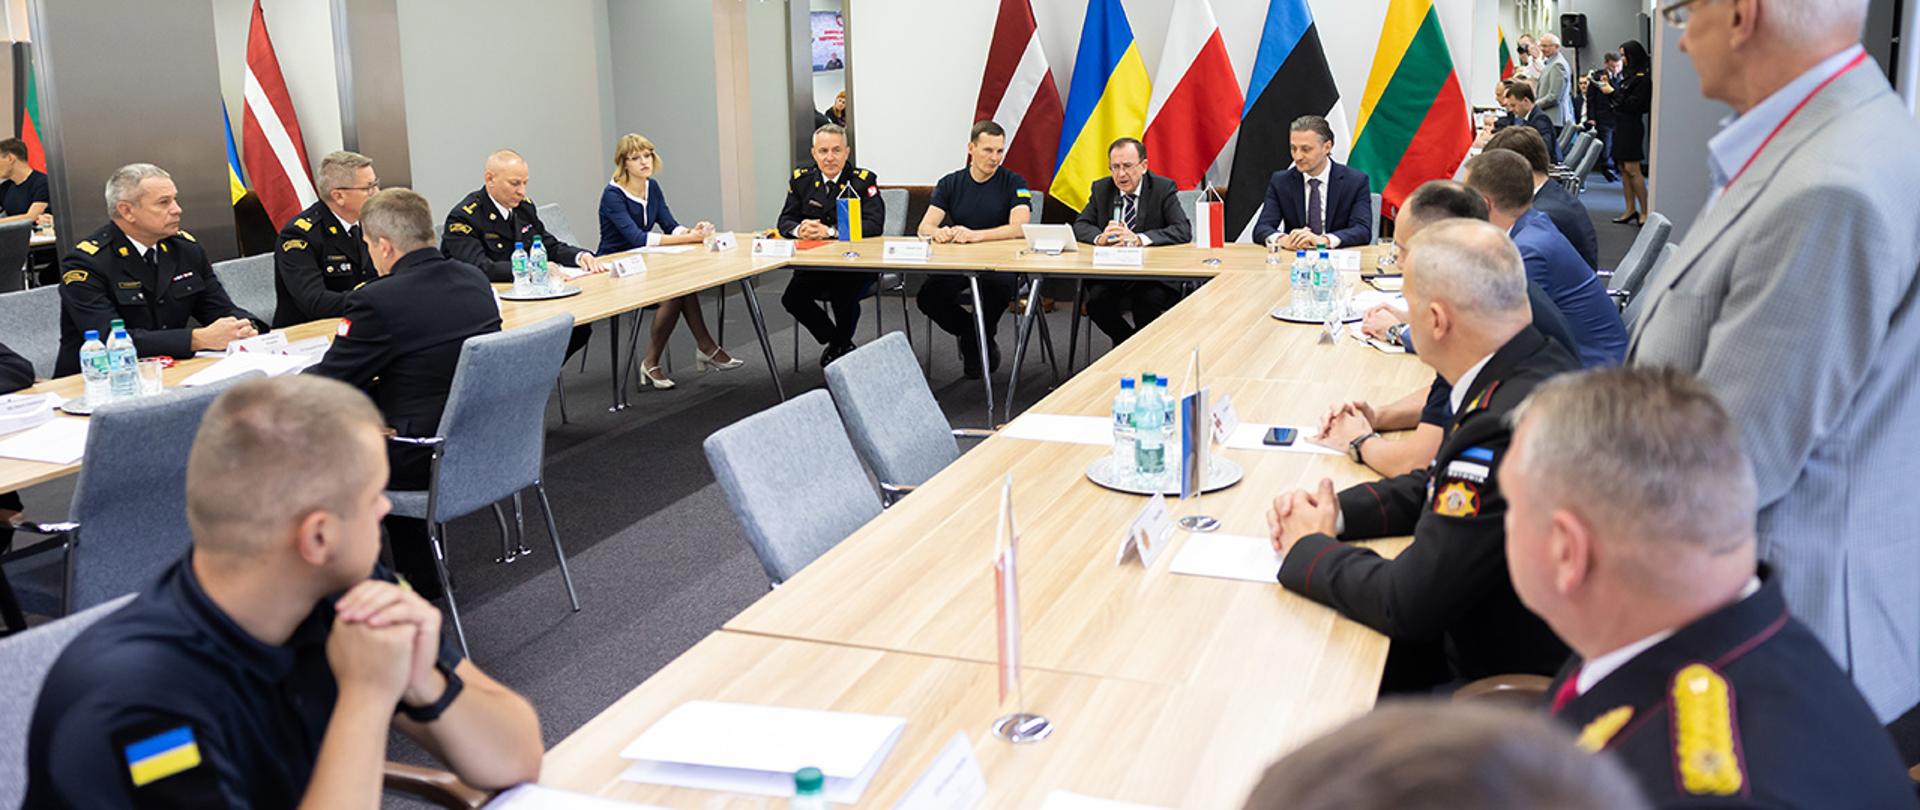 Spotkanie z delegacją z Ukrainy. W tle prezydium